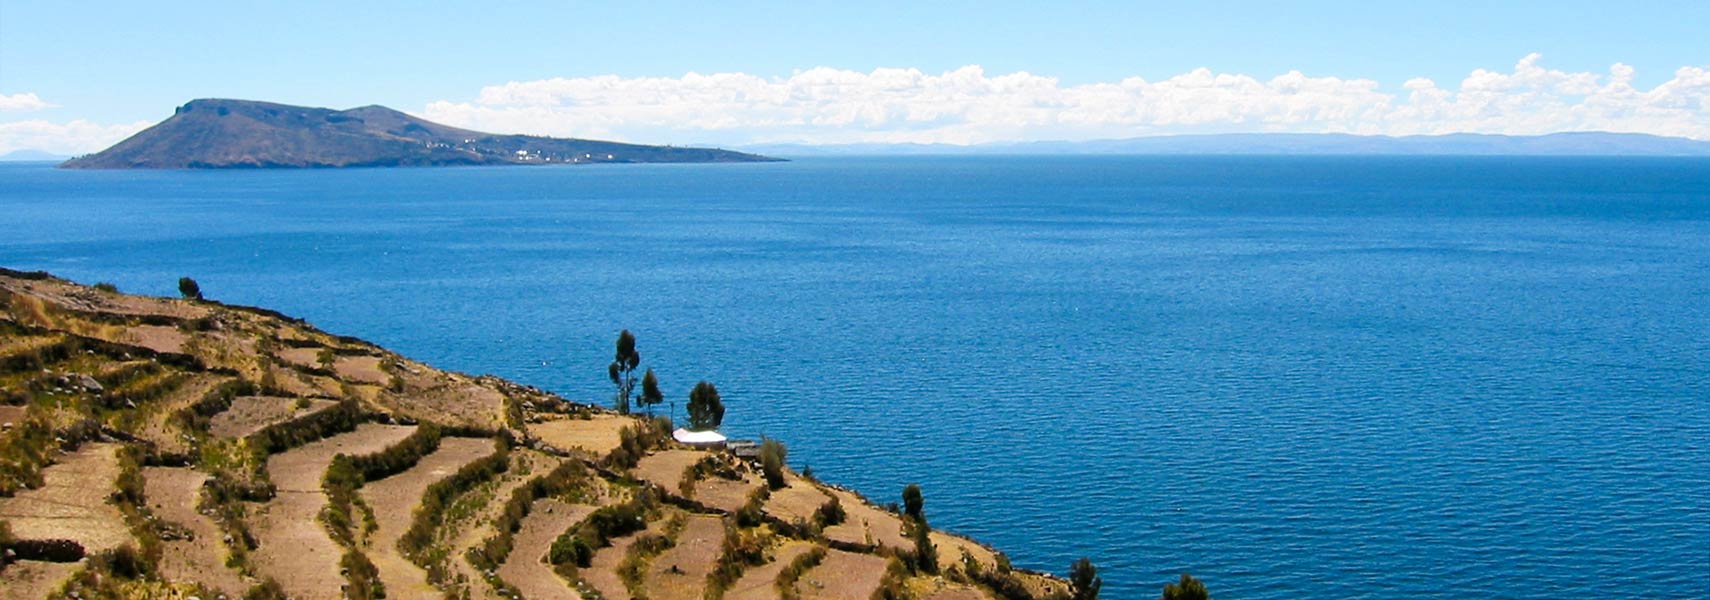 Lake Titicaca with Amantani island, Peru